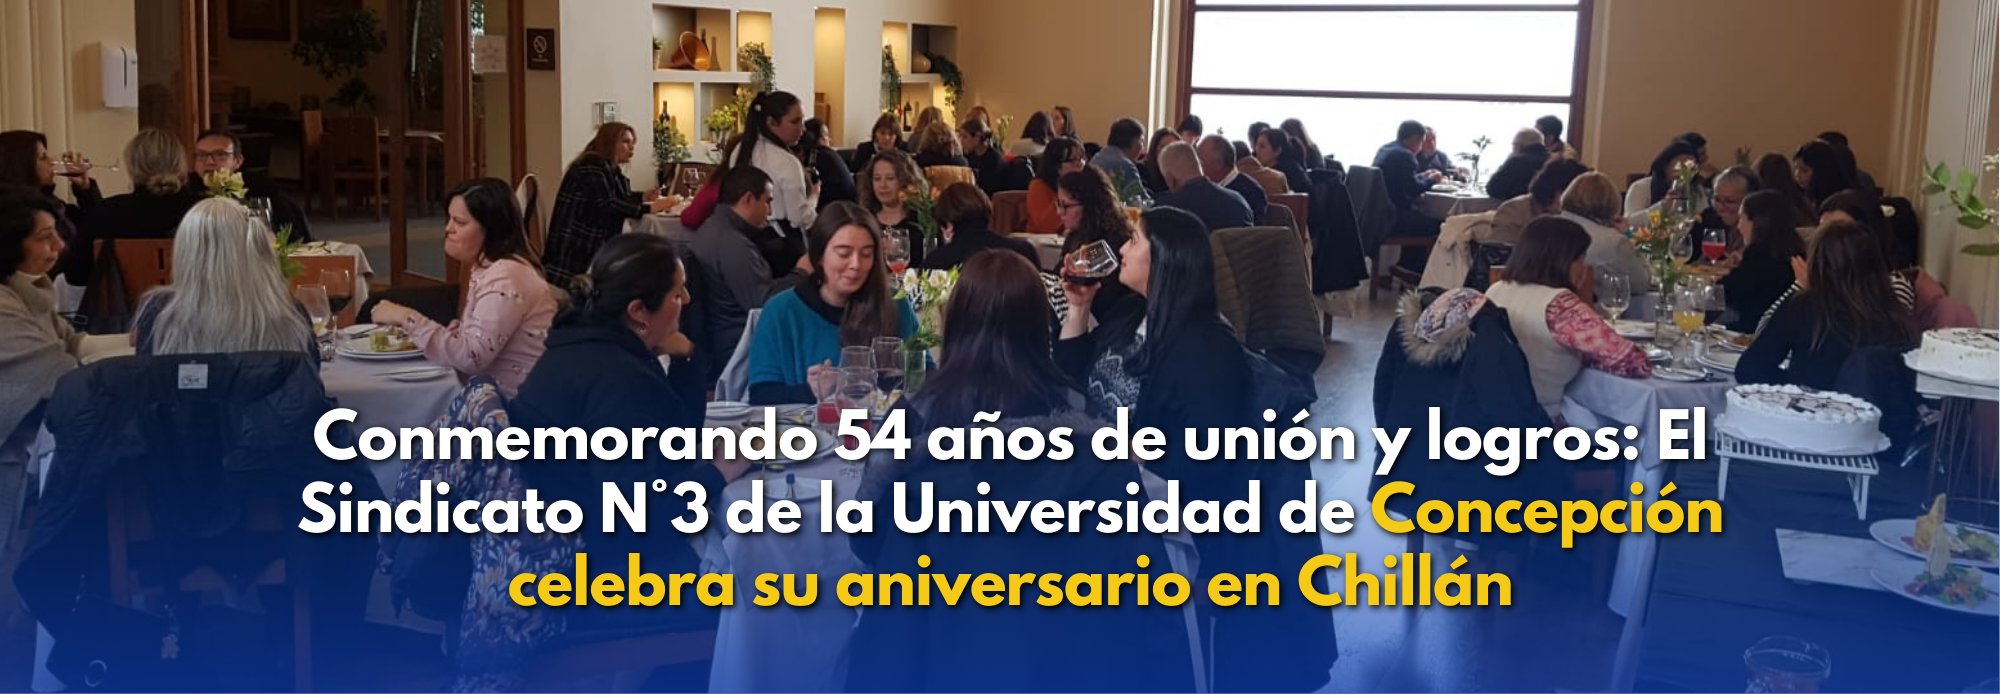 Conmemorando 54 años de unión y logros: El Sindicato N°3 de la Universidad de Concepción celebra su aniversario en Chillán